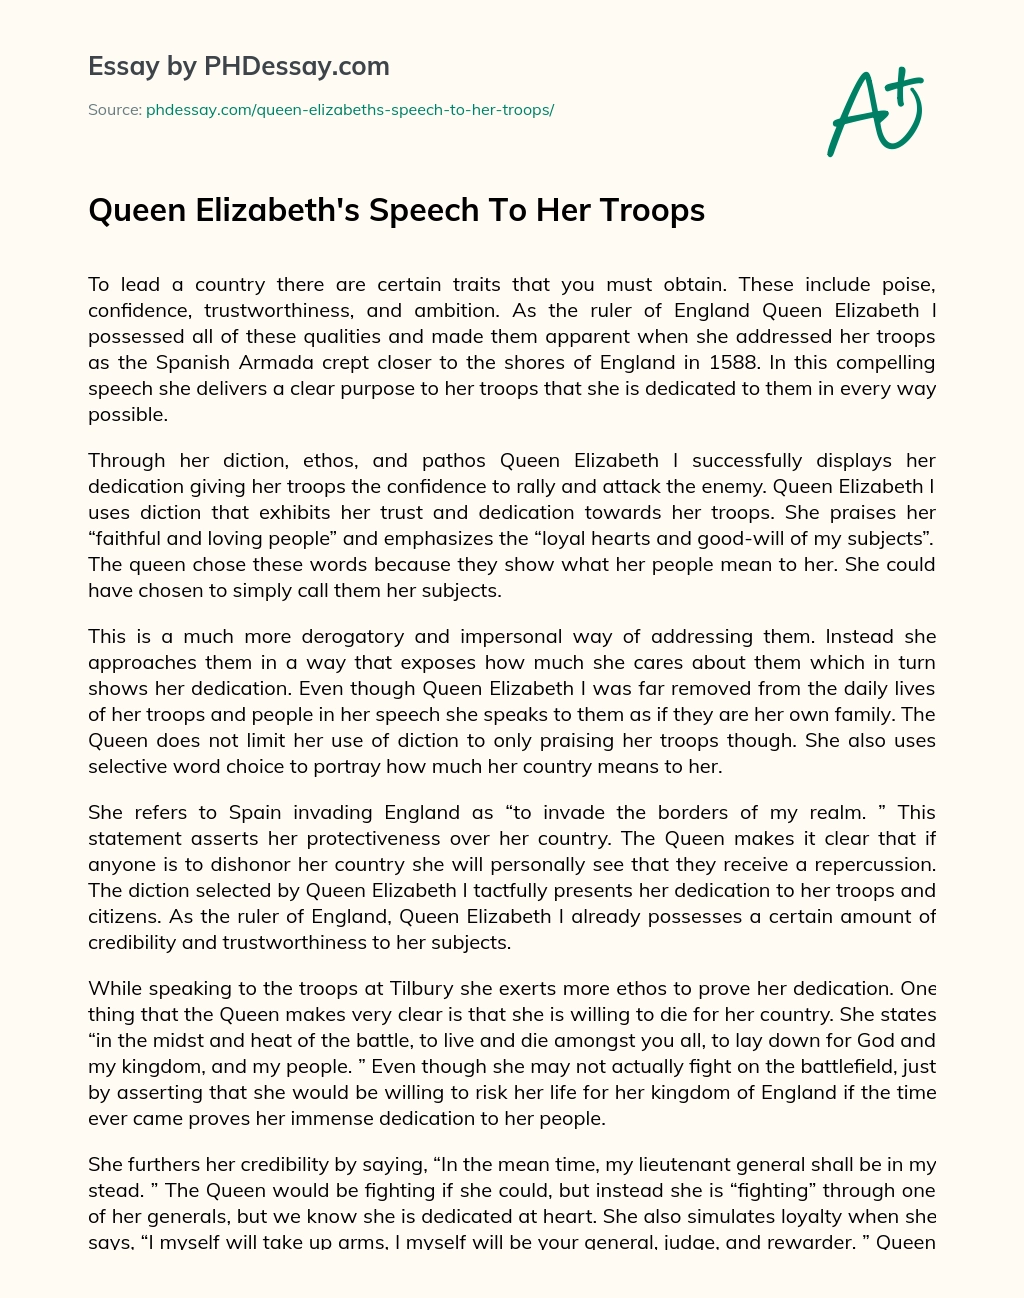 Queen Elizabeth’s Speech To Her Troops essay